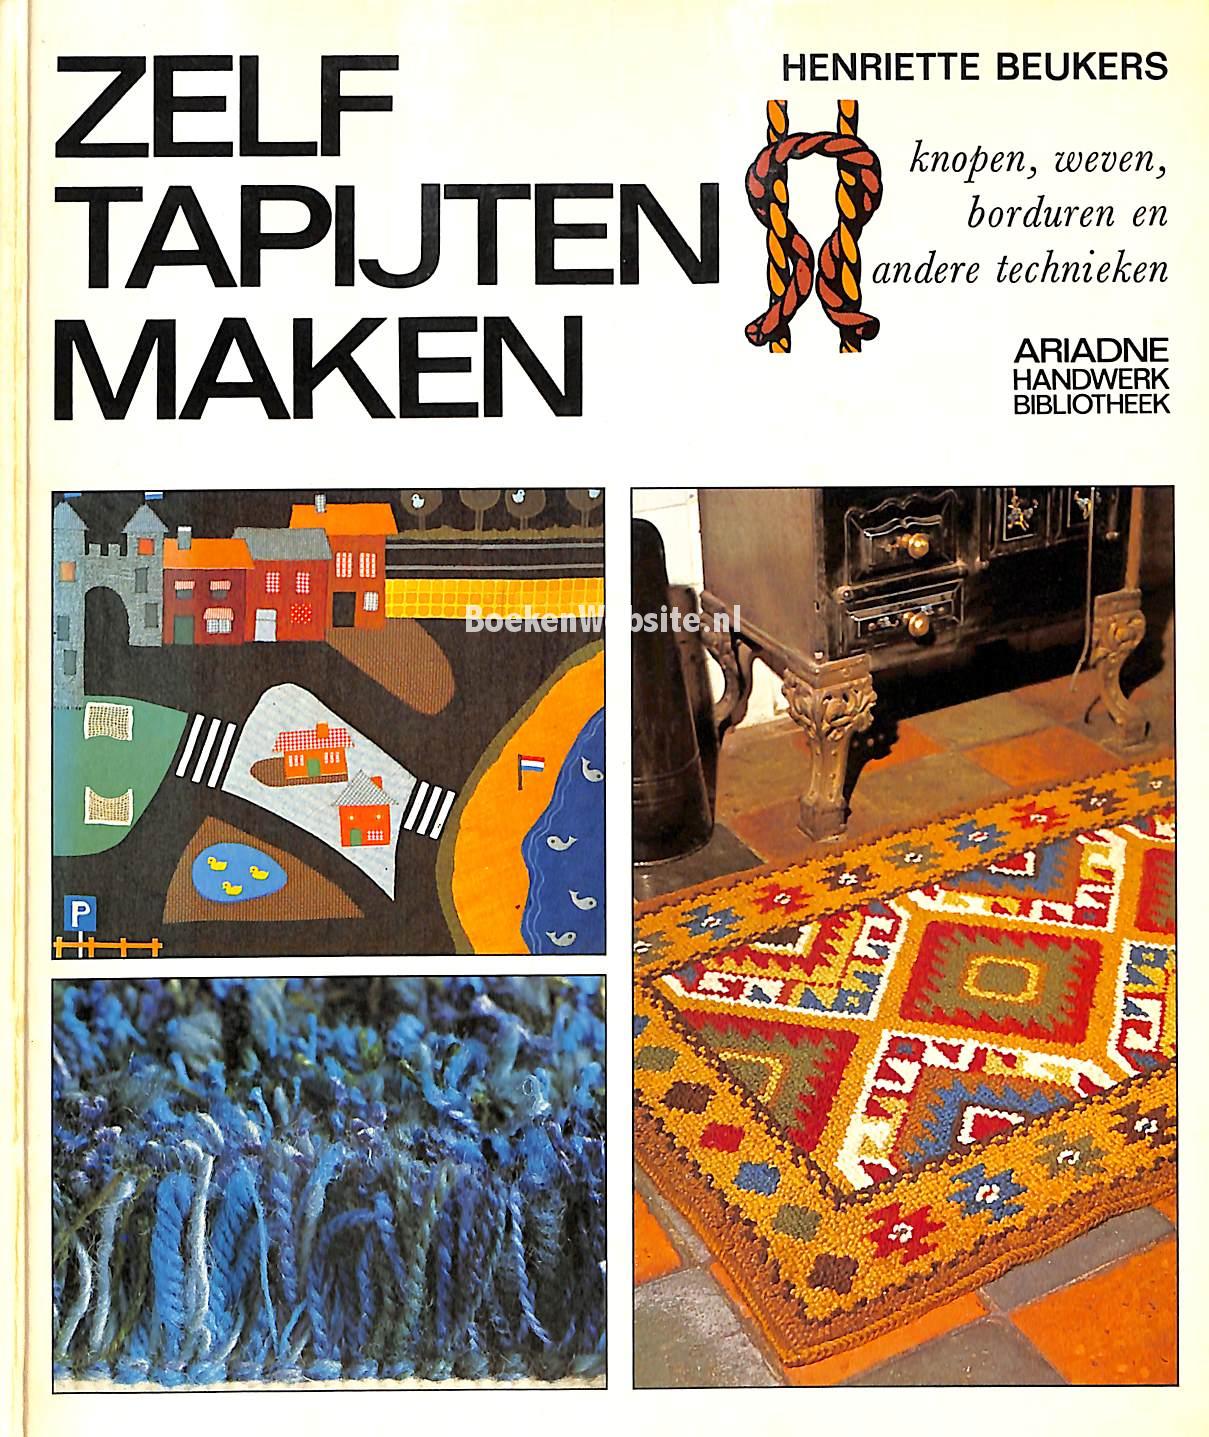 Verwonderlijk Zelf tapijten maken, Beukers Henriette | Boeken Website.nl TM-89